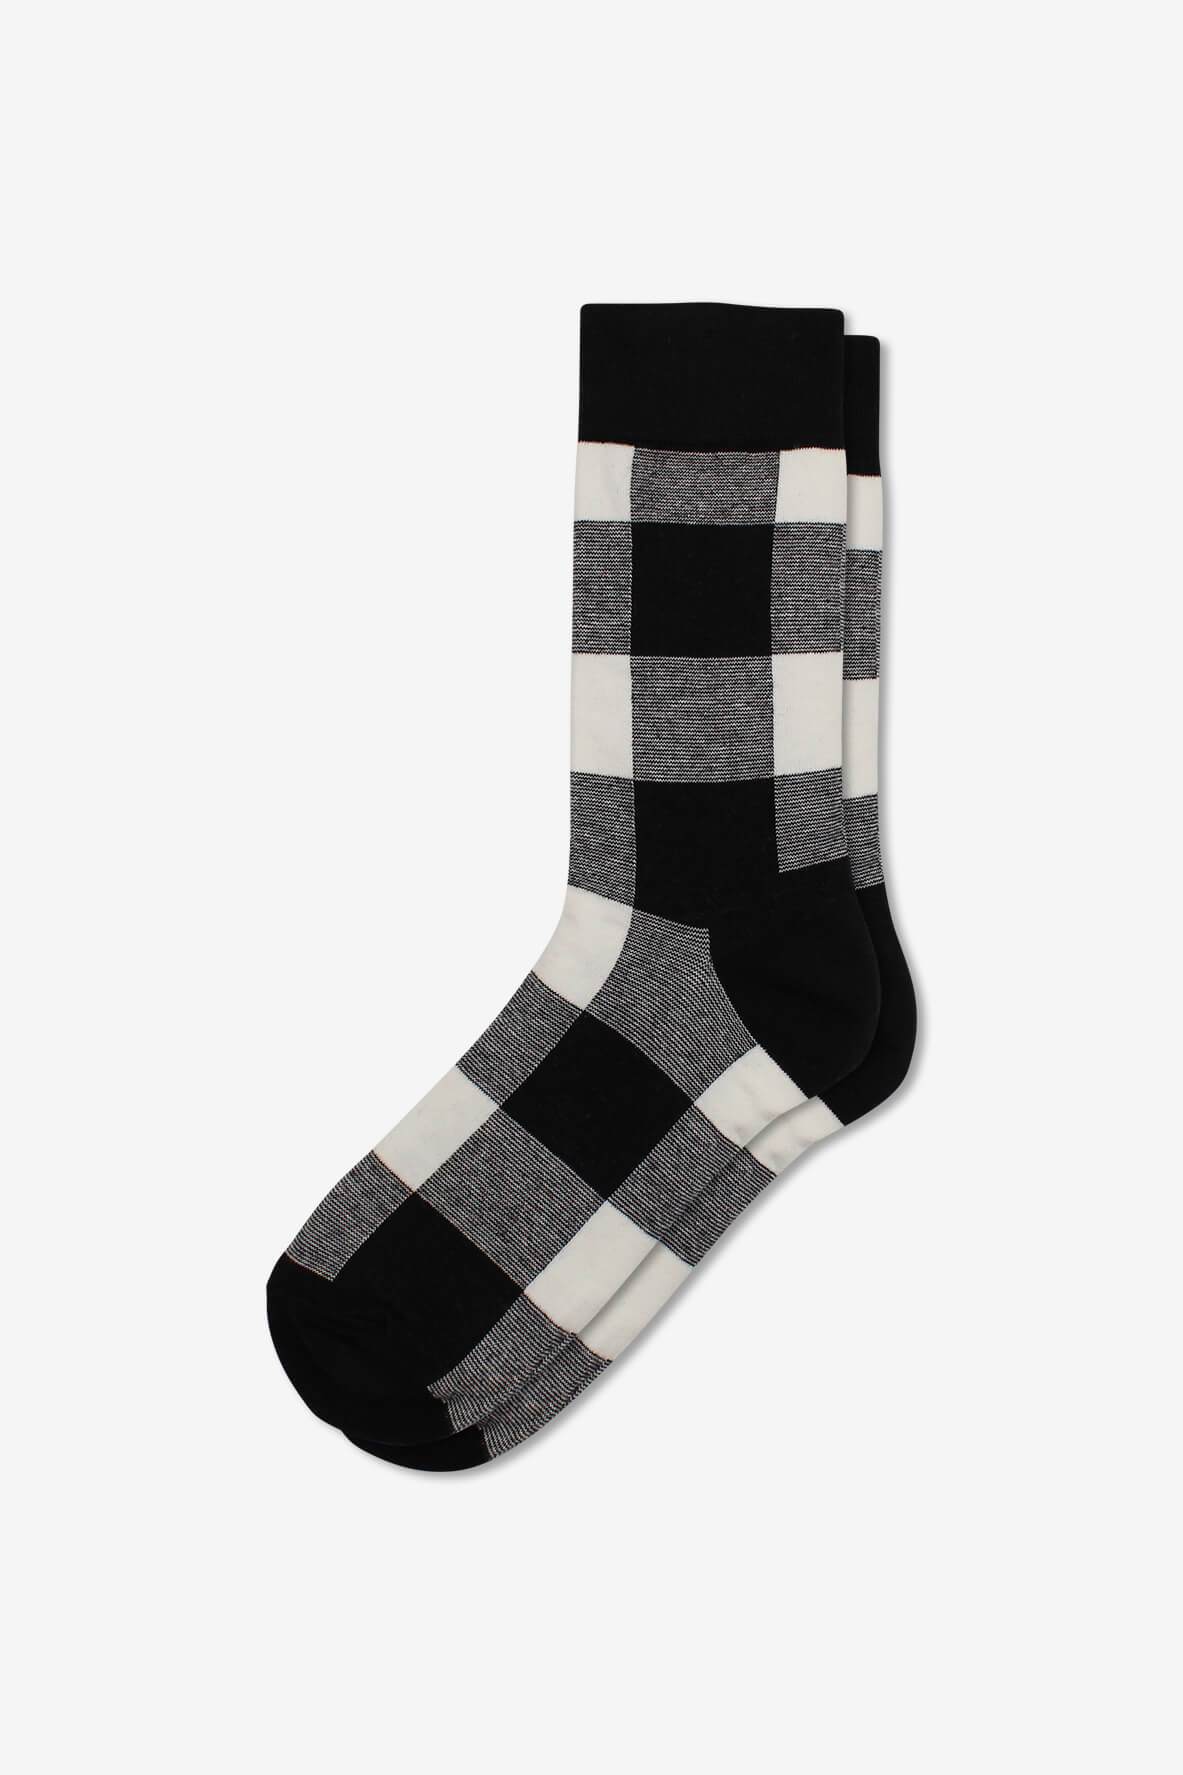 Socks IMG_5255, socks, GoTie